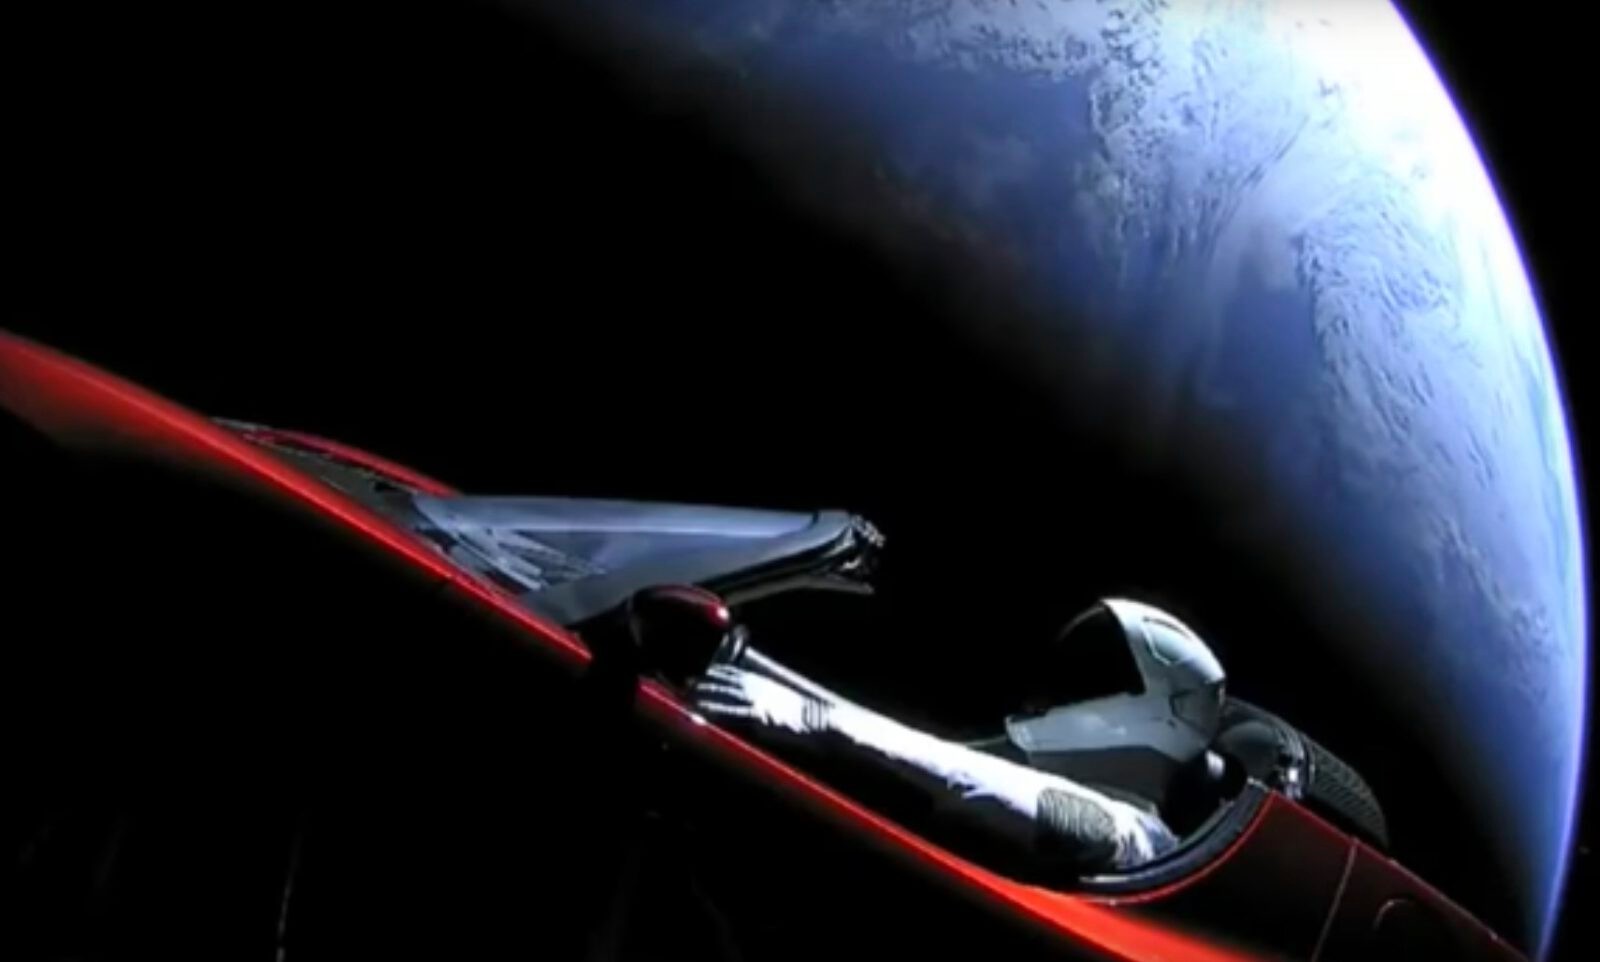 Co zgrzyta w starcie rakiety SpaceX Falcon heavy booster?  Auto w kosmosie nie zbliża nas o krok do lepszego świata